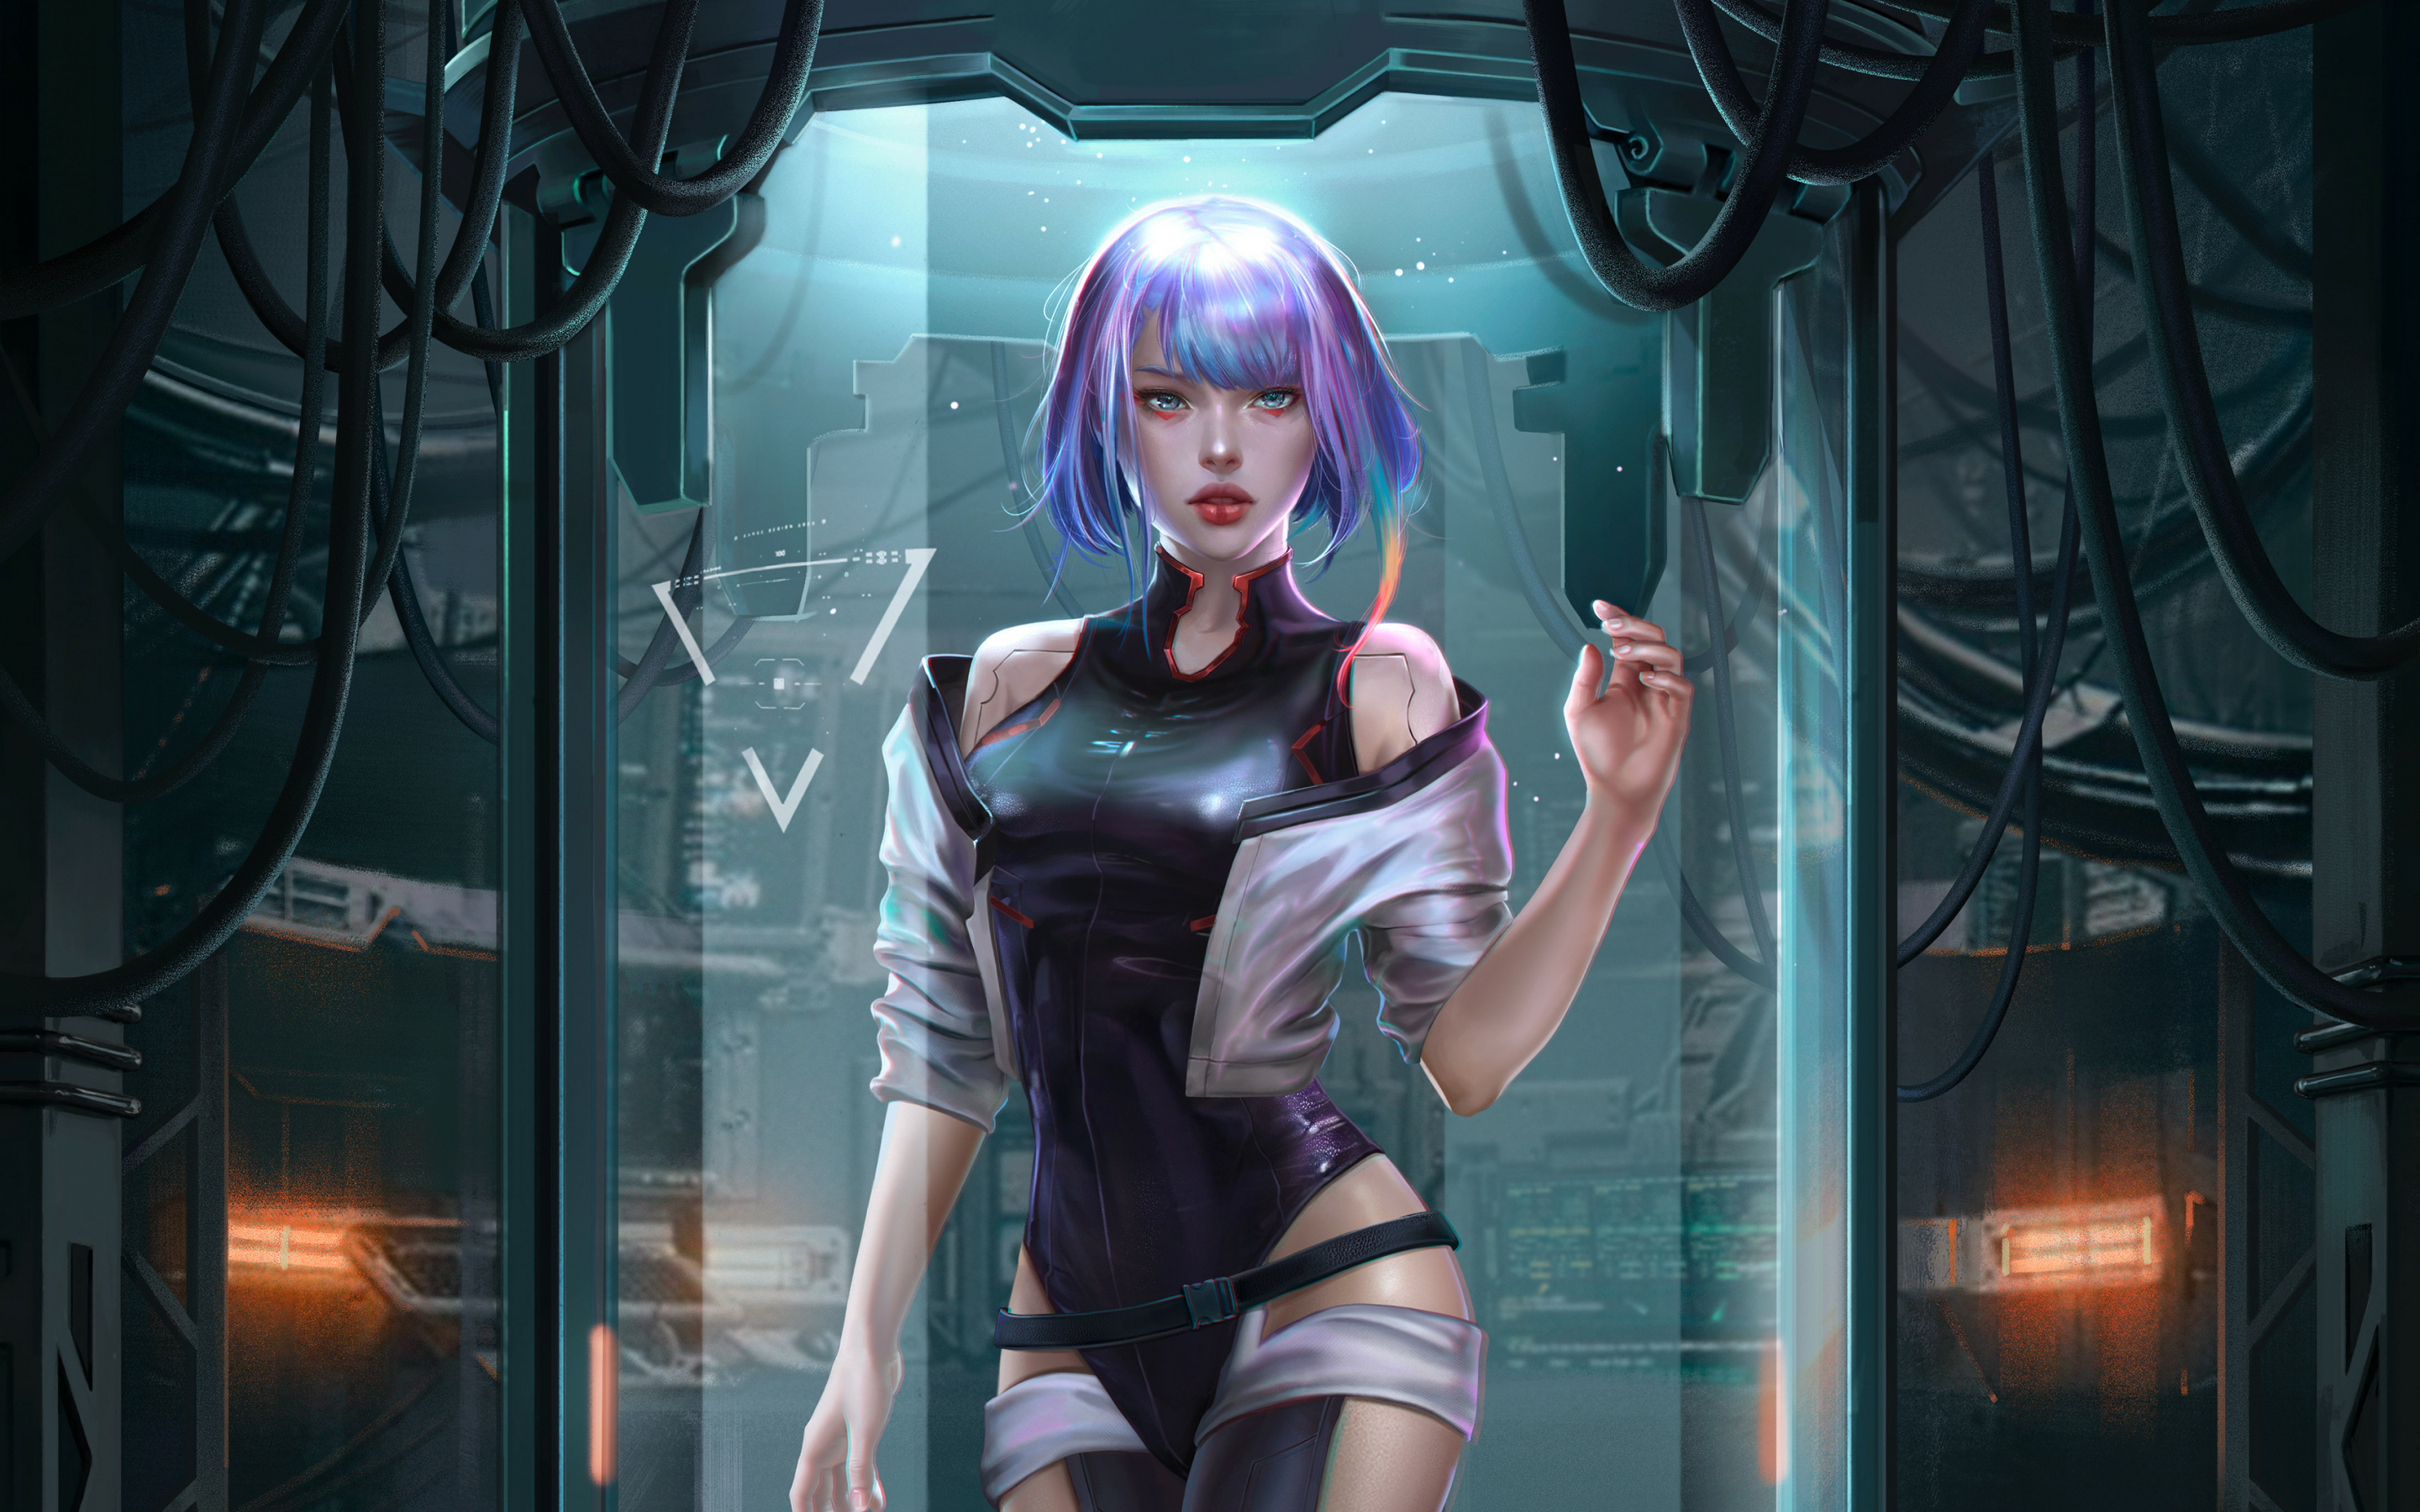 Beautiful Lucy, Cyberpunk: Edgerunners, netflix show, fan art, 2880x1800 wallpaper